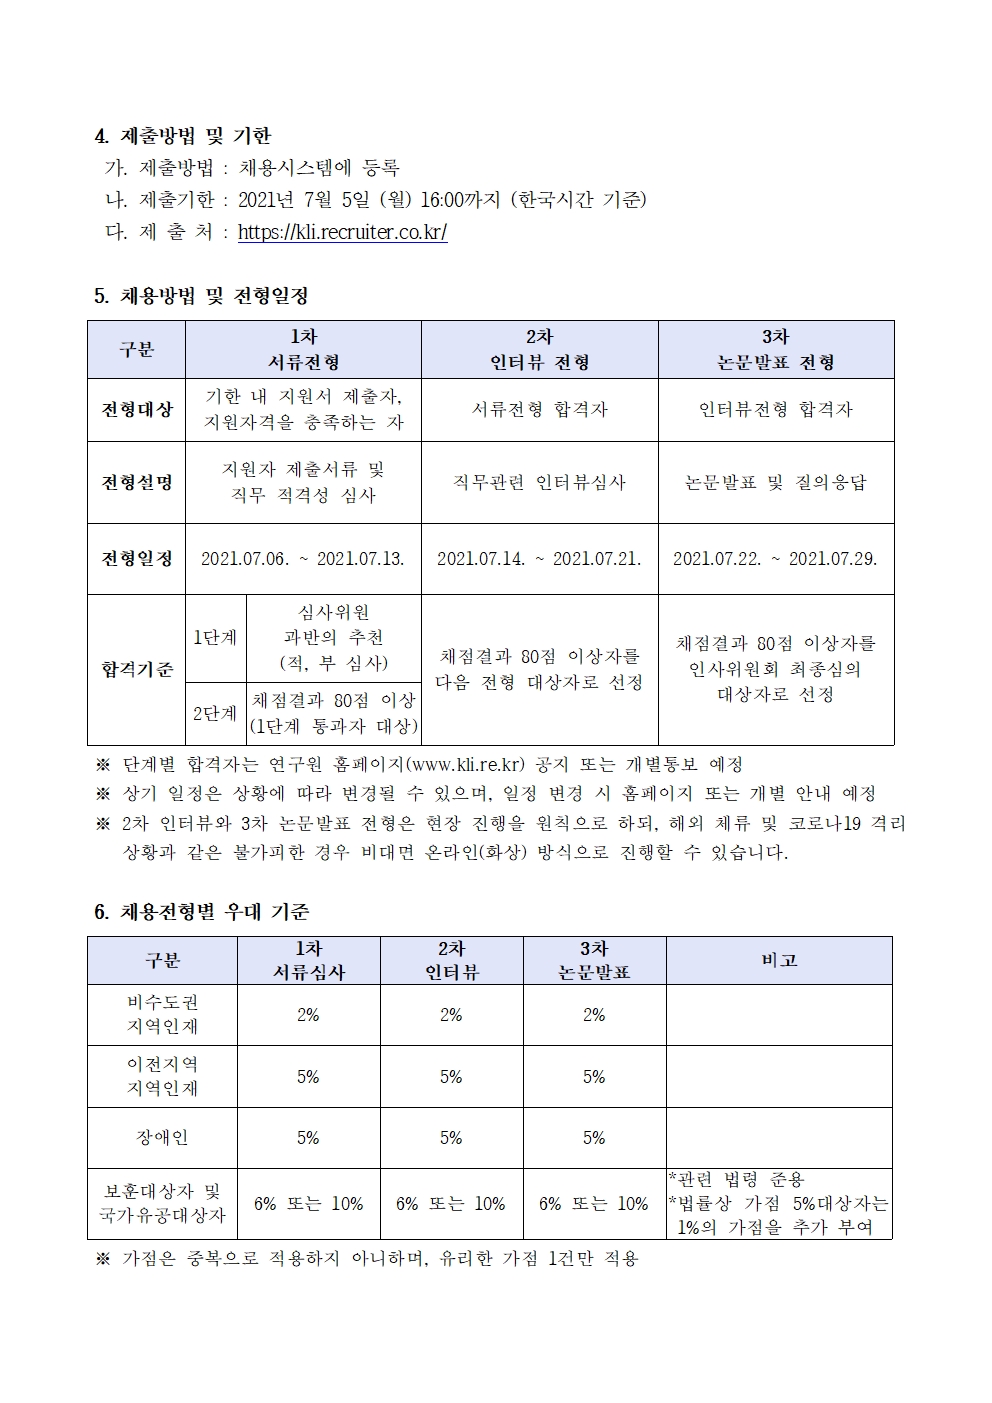 한국노동연구원 연구위원 채용공고 3 | 자세한 내용은 하단의 첨부파일을 참조하세요 : 2021-05호 연구위원 채용 공고문.pdf